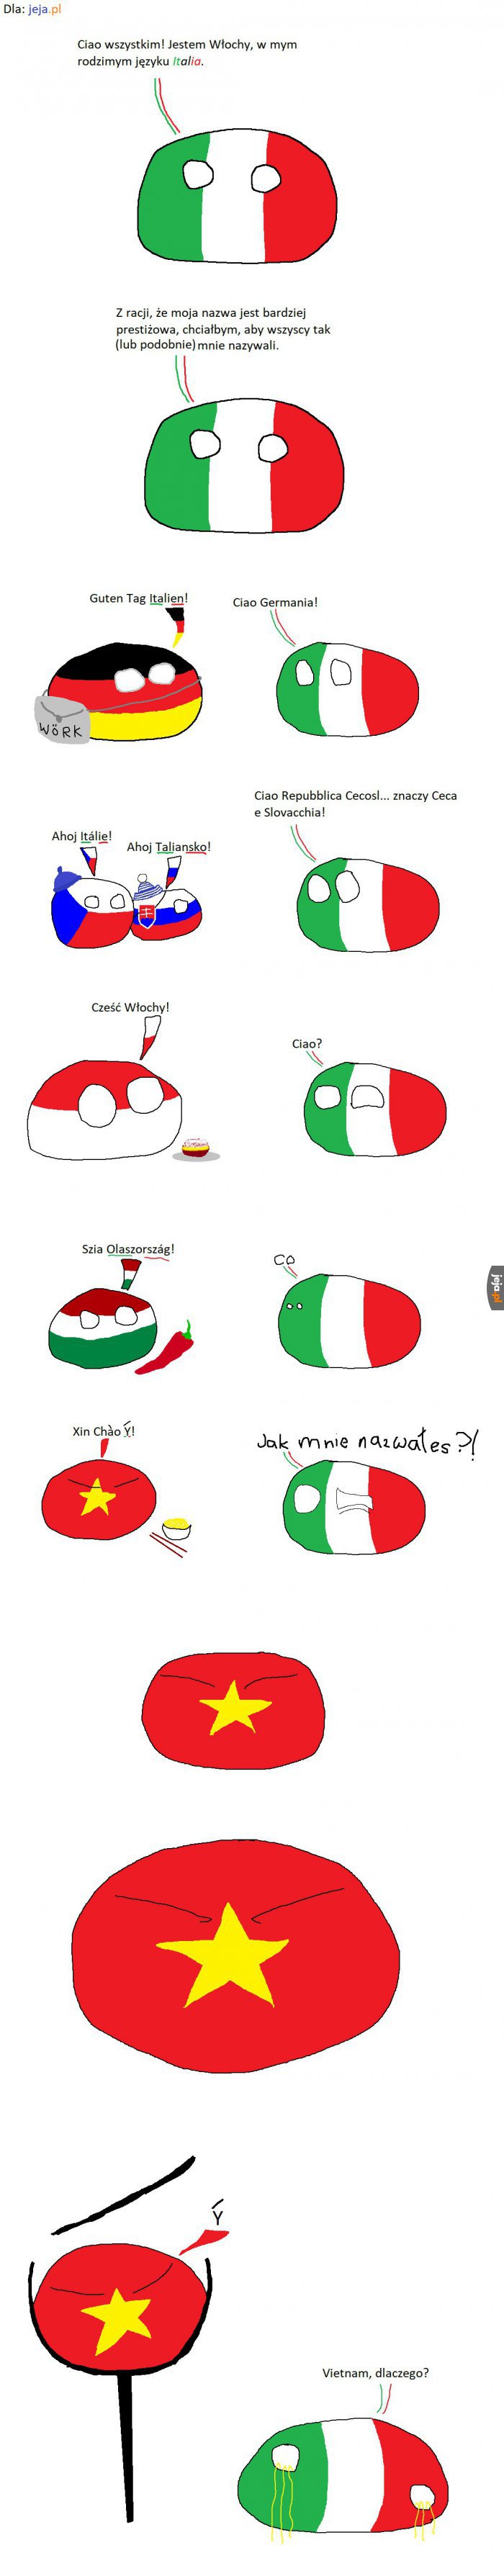 Włochy w różnych językach